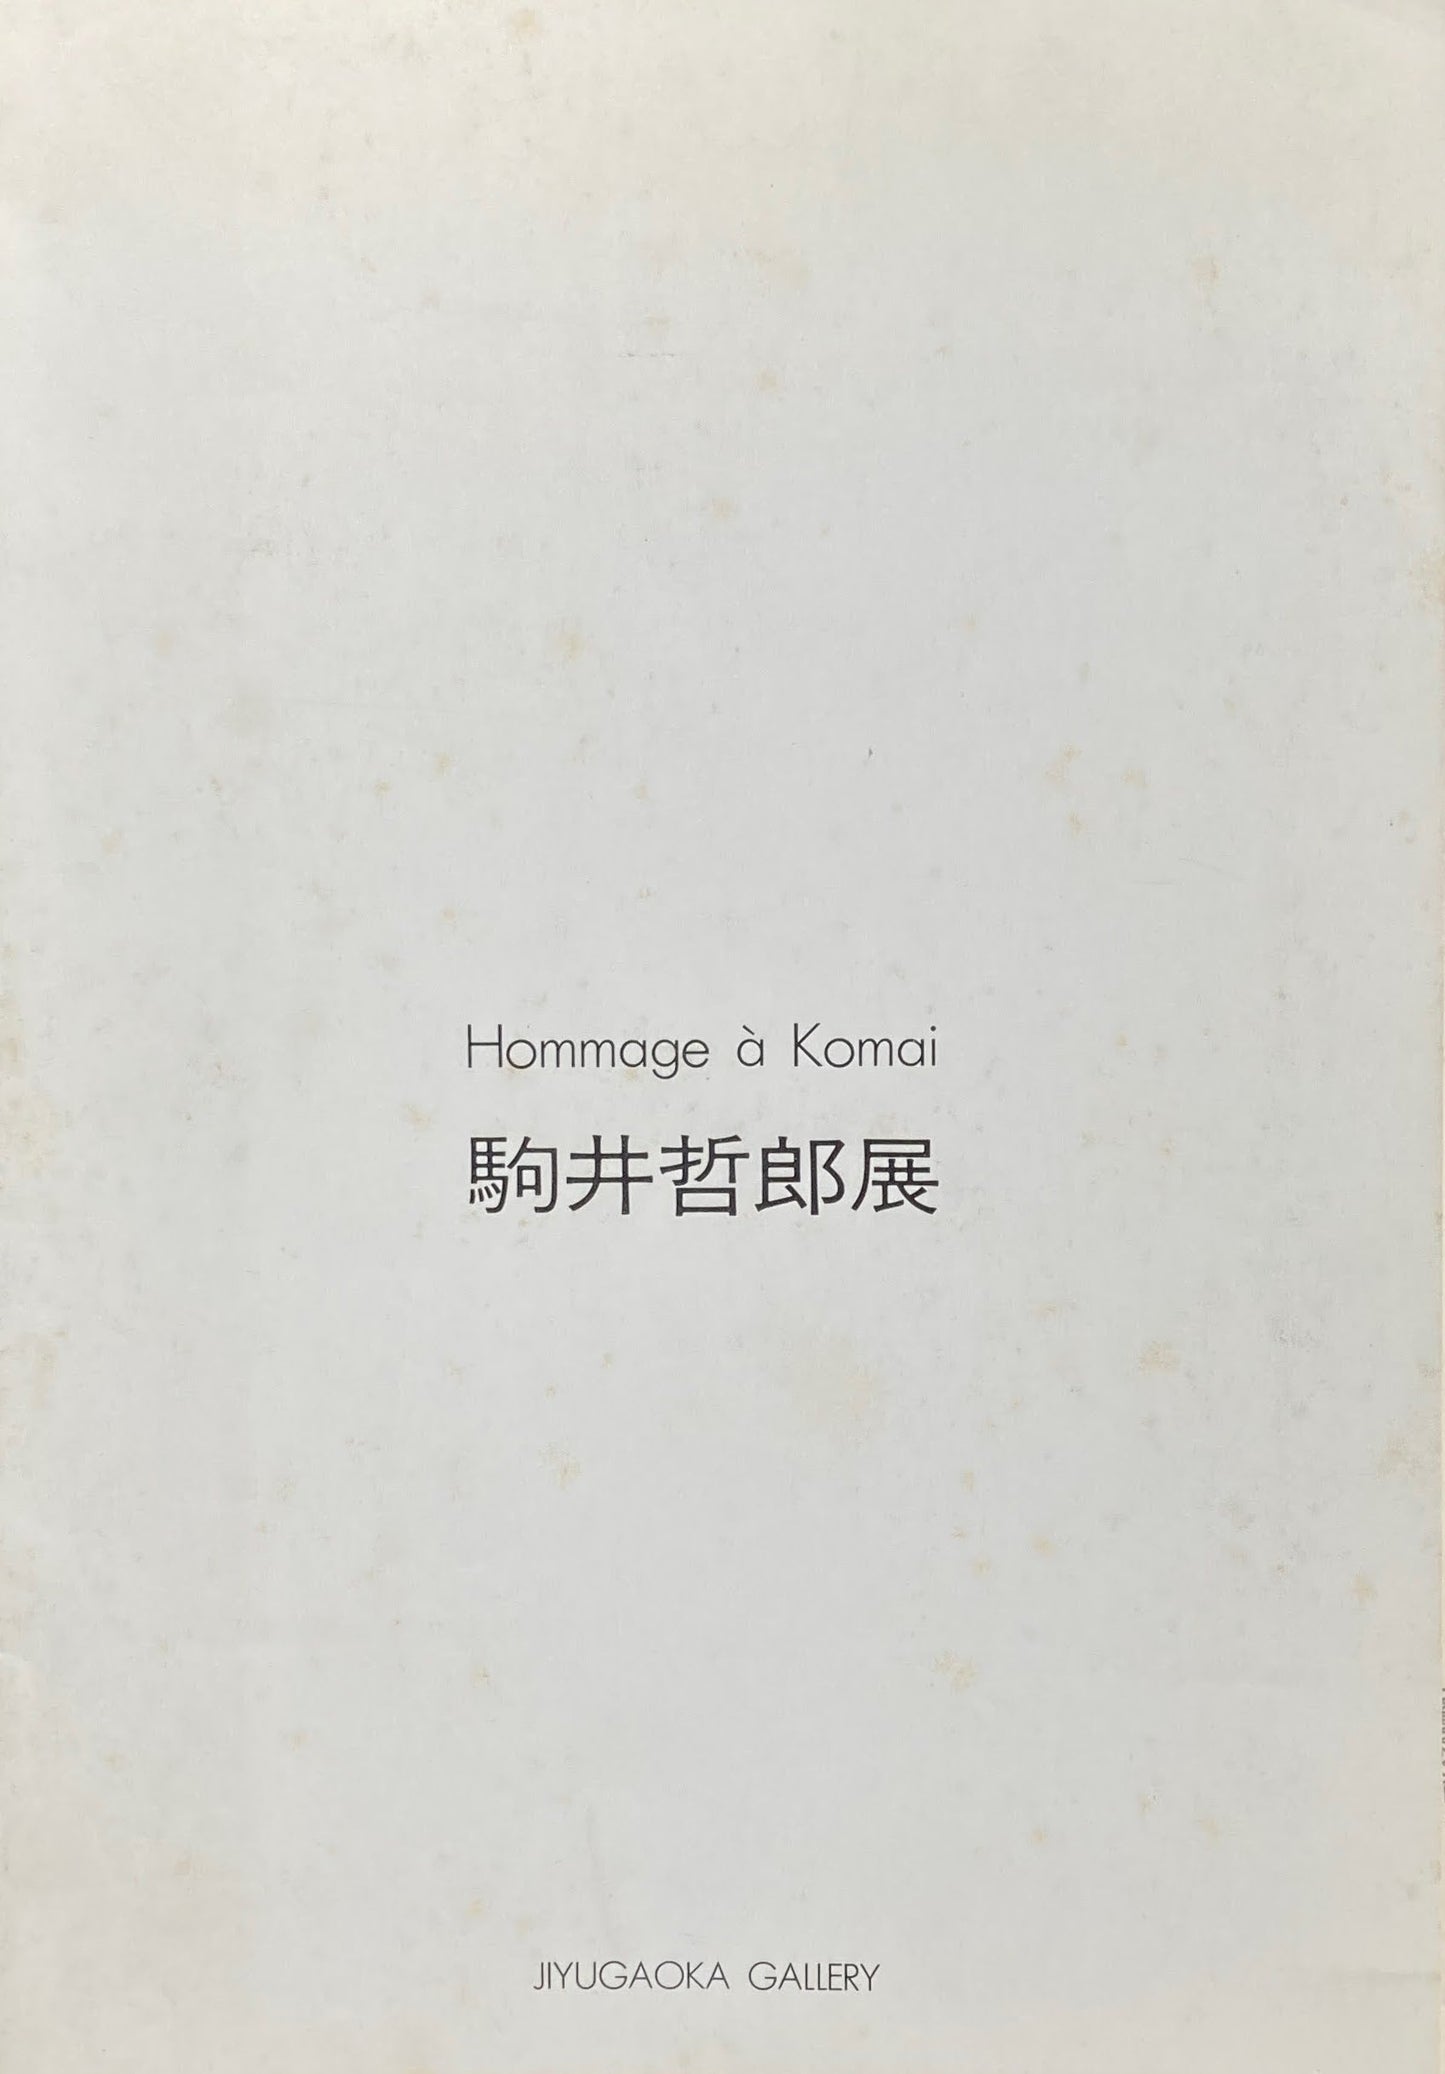 駒井哲郎展　Hommage a Komai